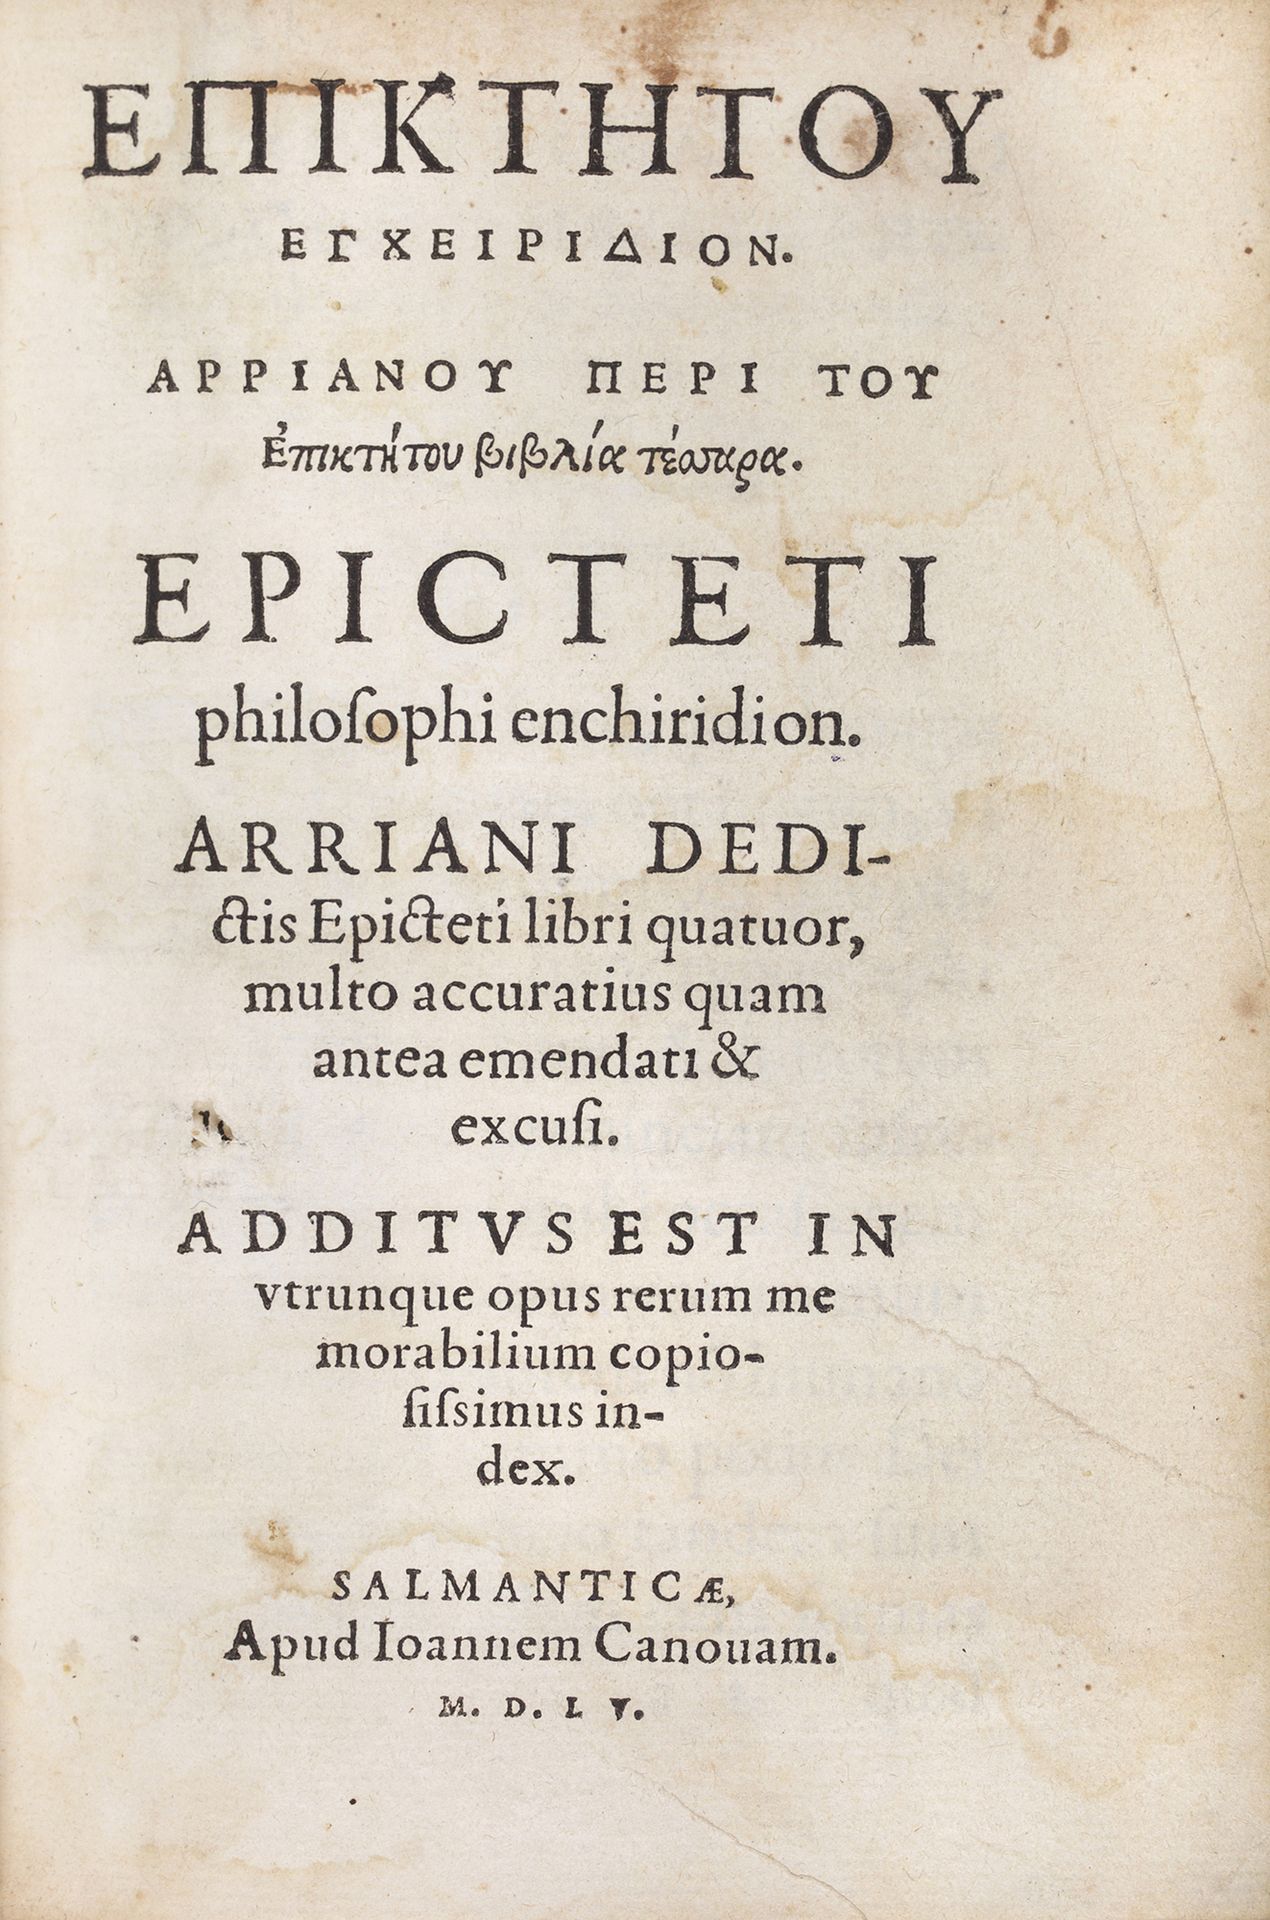 EPICTETE [Epicteti philosophi enchiridion. Arriani dedictis Epicteti libri quatu&hellip;